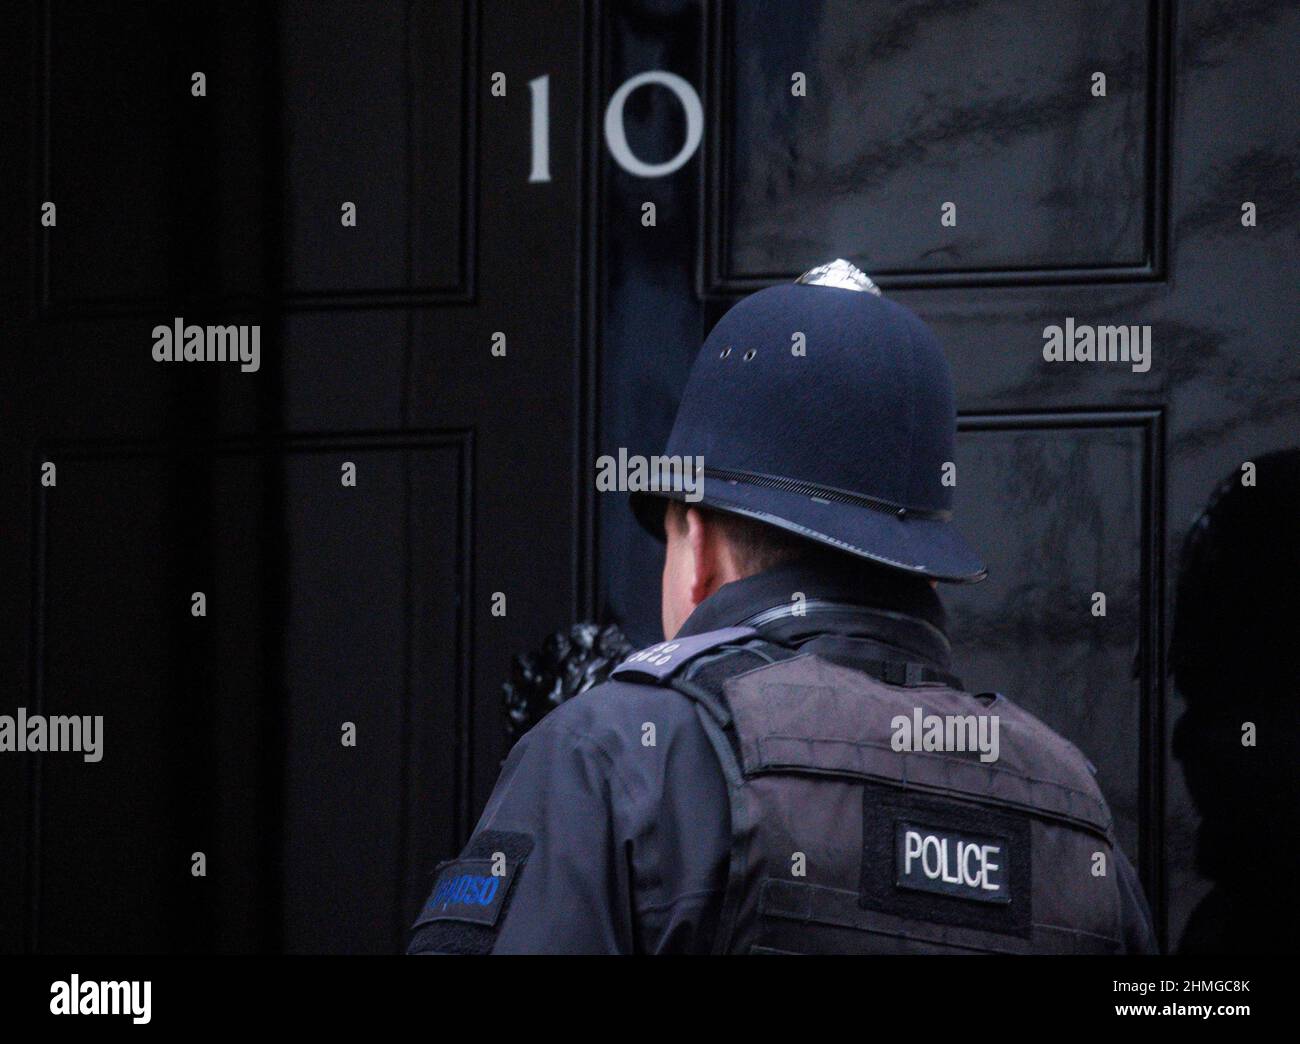 Die Metropolitan Police ermittelt mutmaßliche Parteien unter Nummer 10. Sie haben Fragebögen an etwa 50 Personen, darunter Boris Johnson, geschickt. Stockfoto